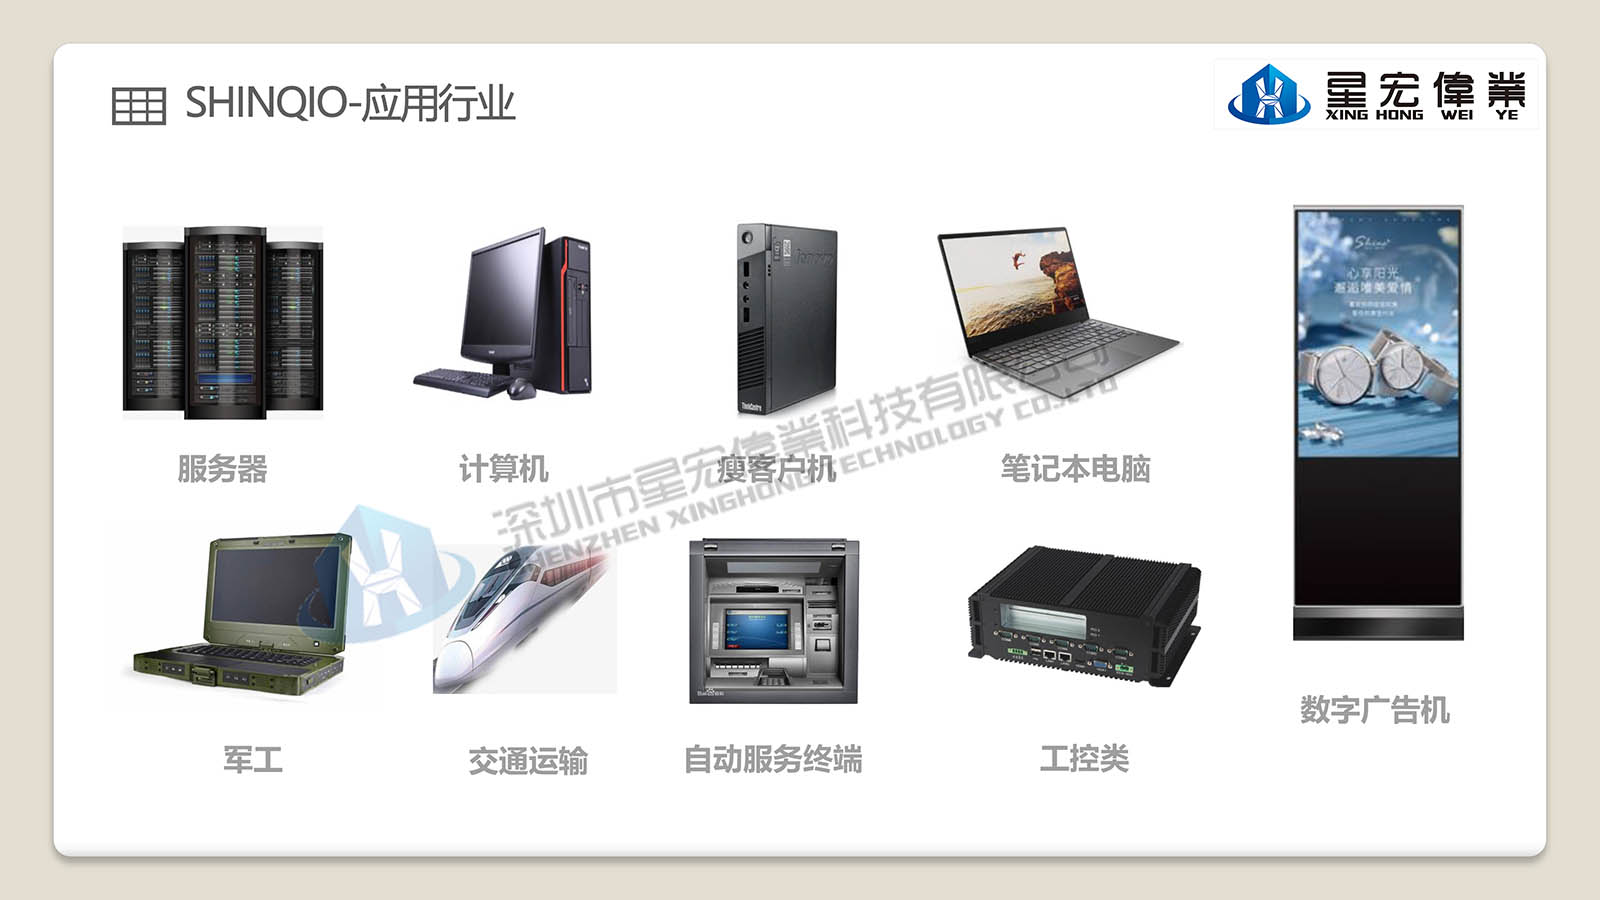 【星宏伟业】UDIMM-SHINQIO PC/嵌入式内存DDR3 4G 8G 16G